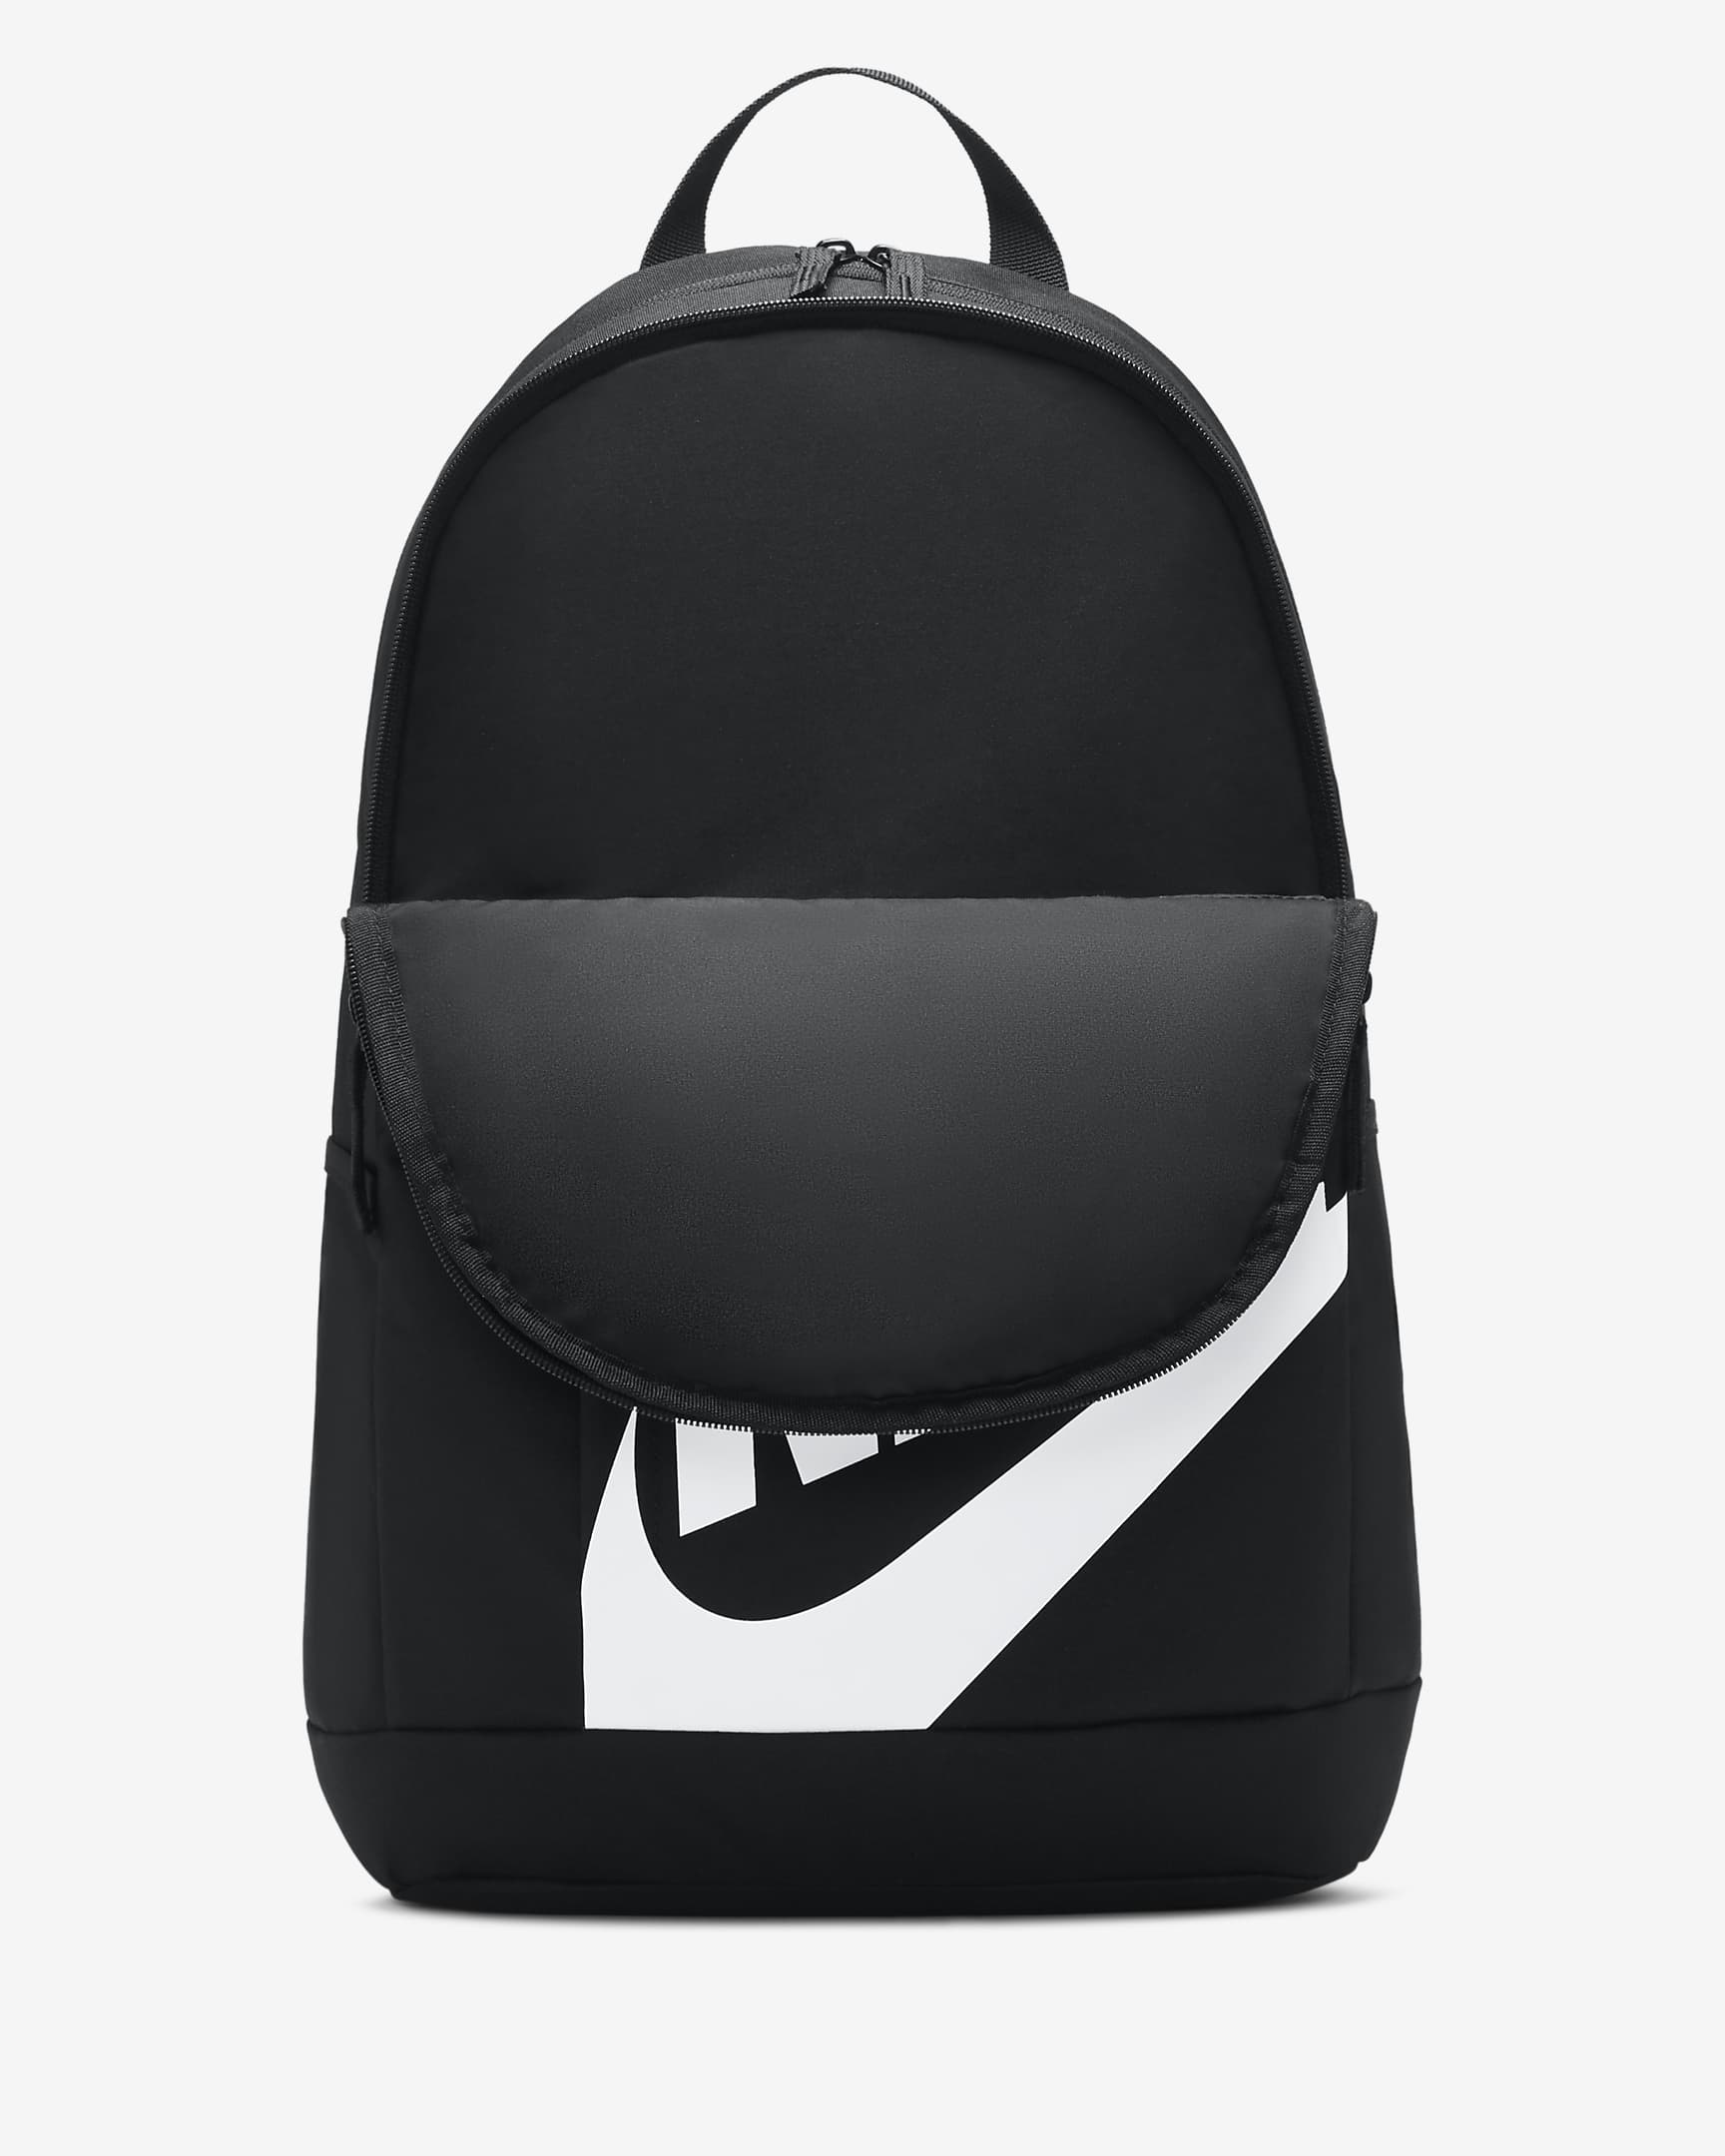 Nike Rucksack (21 l) - Schwarz/Schwarz/Weiß